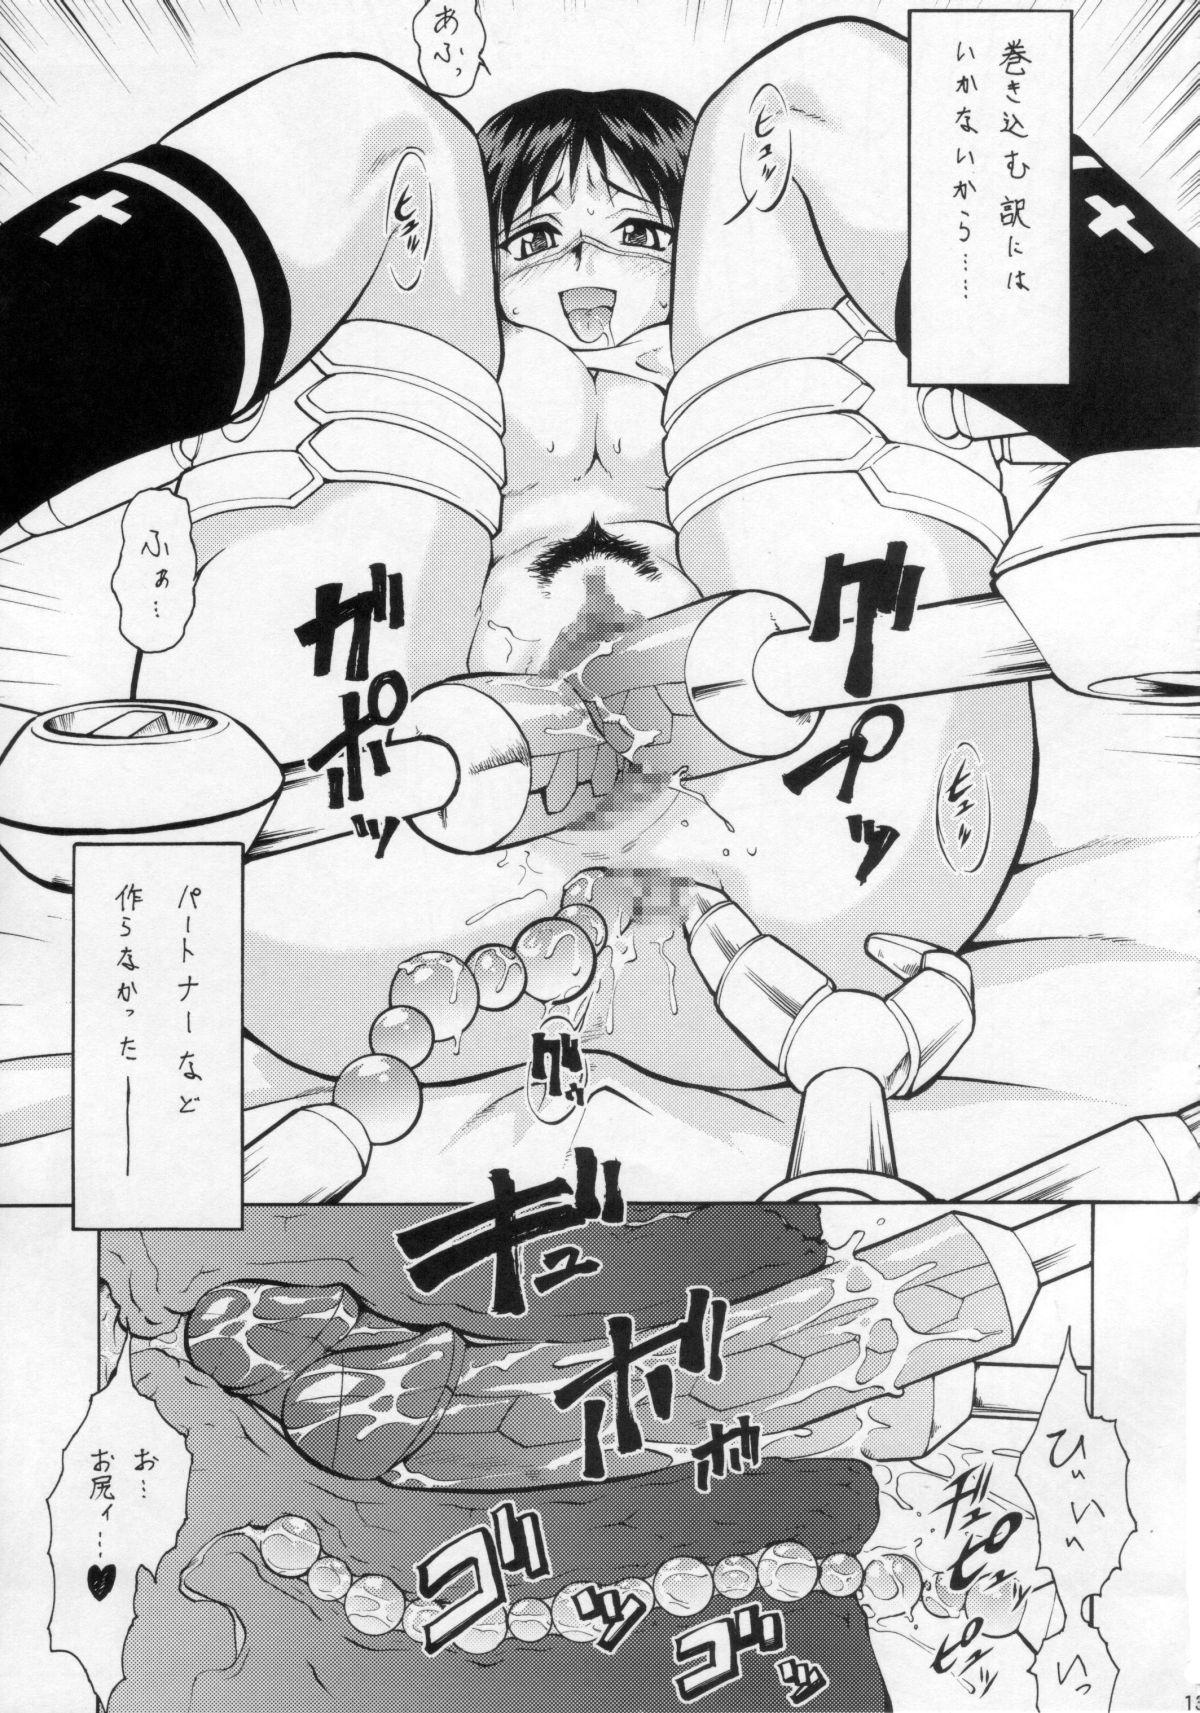 Umeta Manga Shuu 11 -nin iru! 12